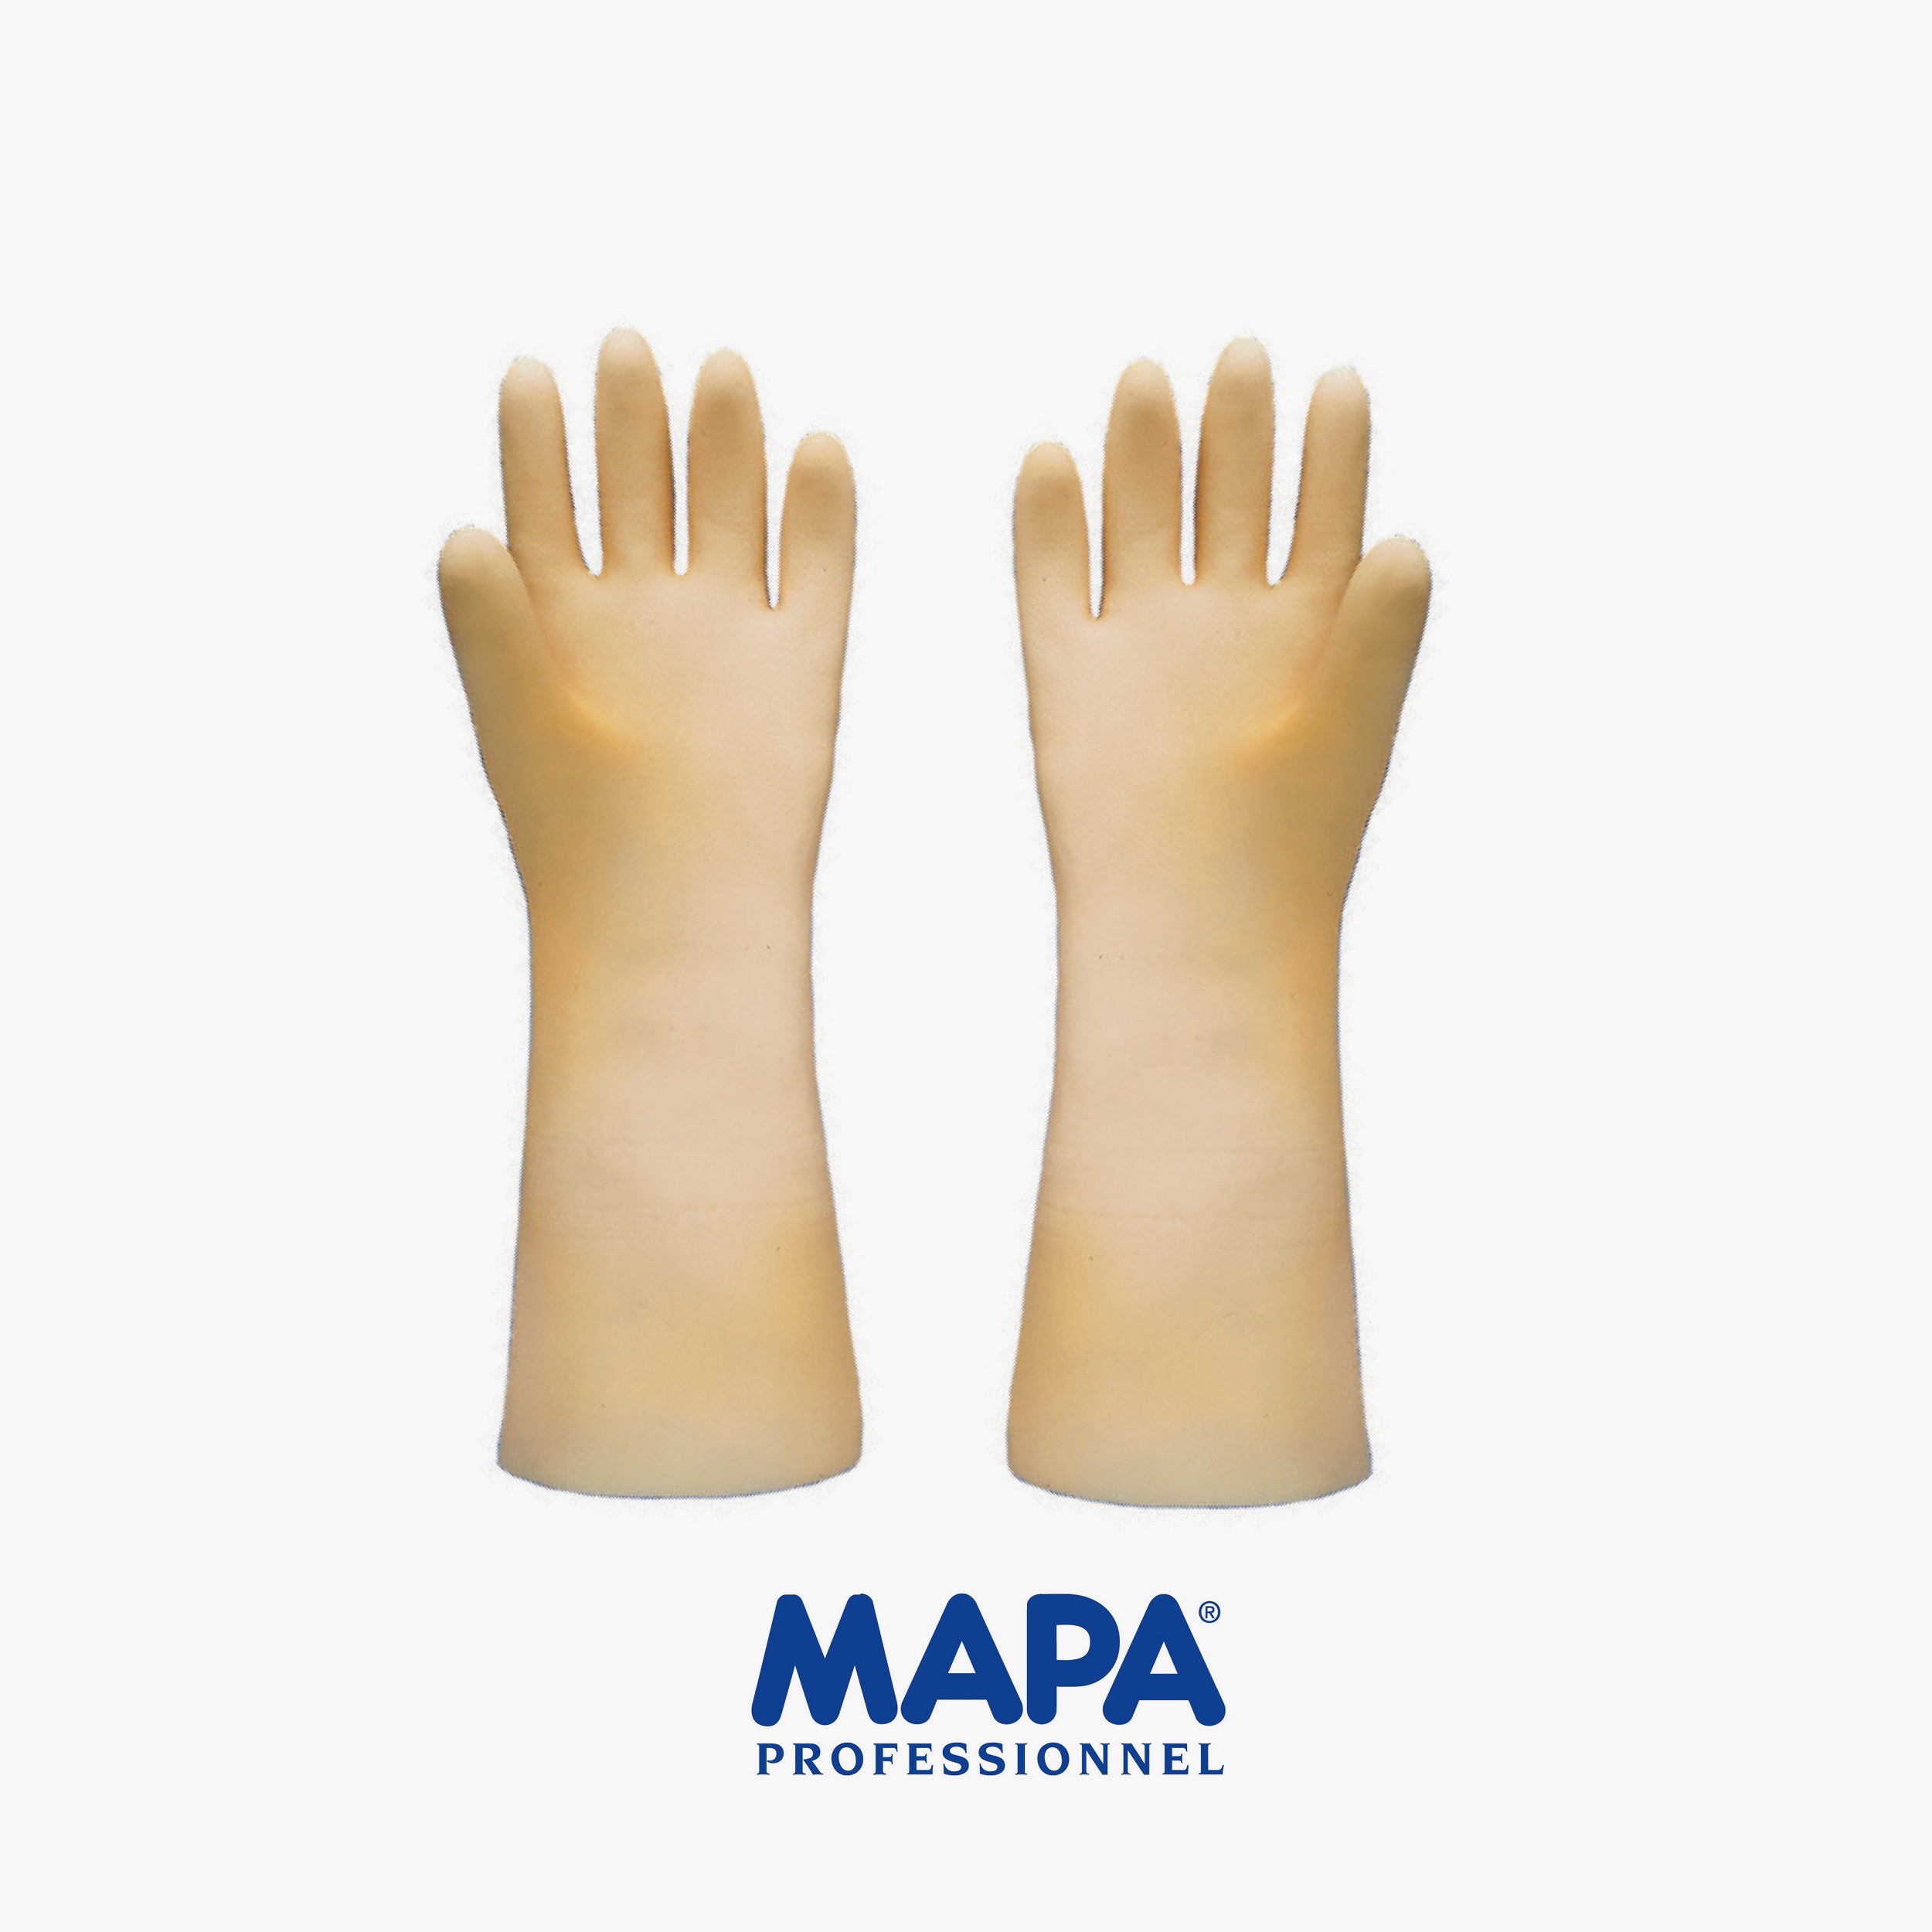 MAPA ADVANTEC exTRIONIC gloves cm.36 size (10/6/7/8/9)